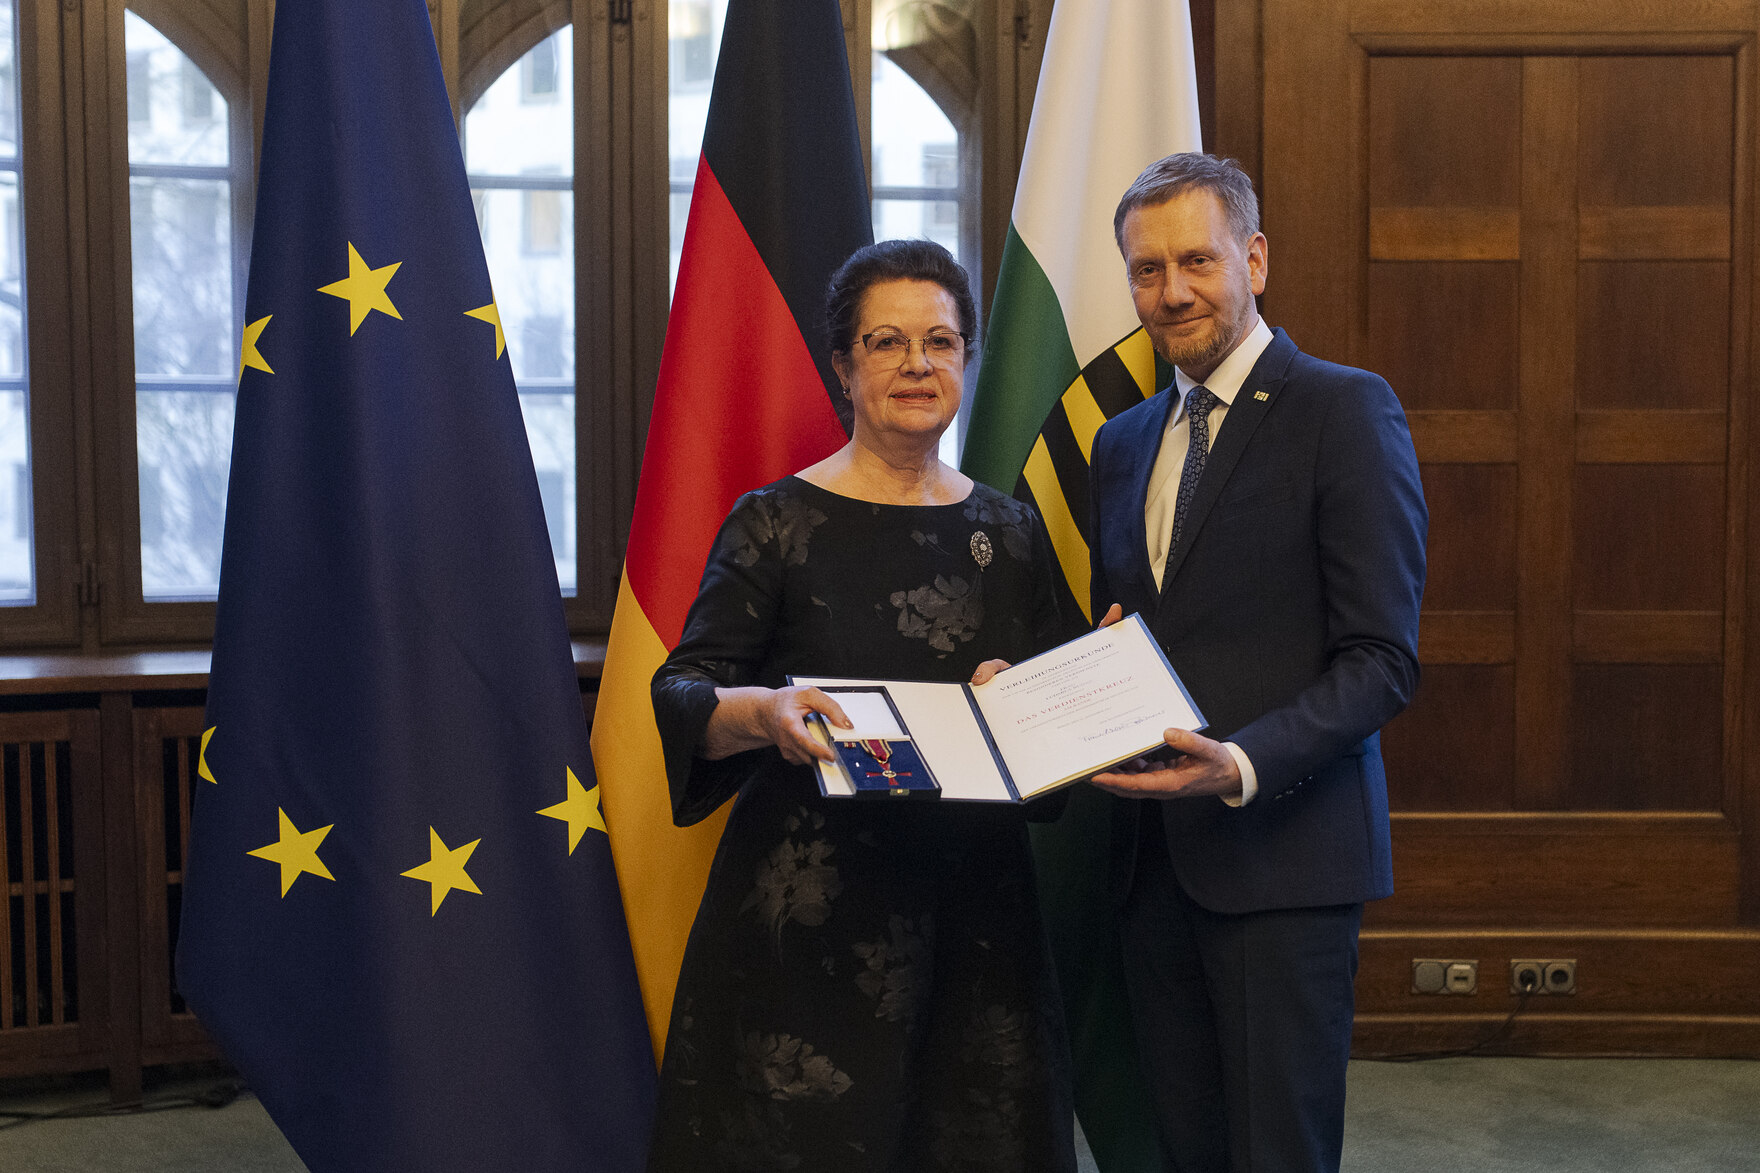 Eine Frau und ein Mann in einem Raum, die Frau links hält eine offene Präsentationsmappe mit einer Auszeichnung, im Hintergrund die Flaggen der EU, Deutschlands und Sachsens.